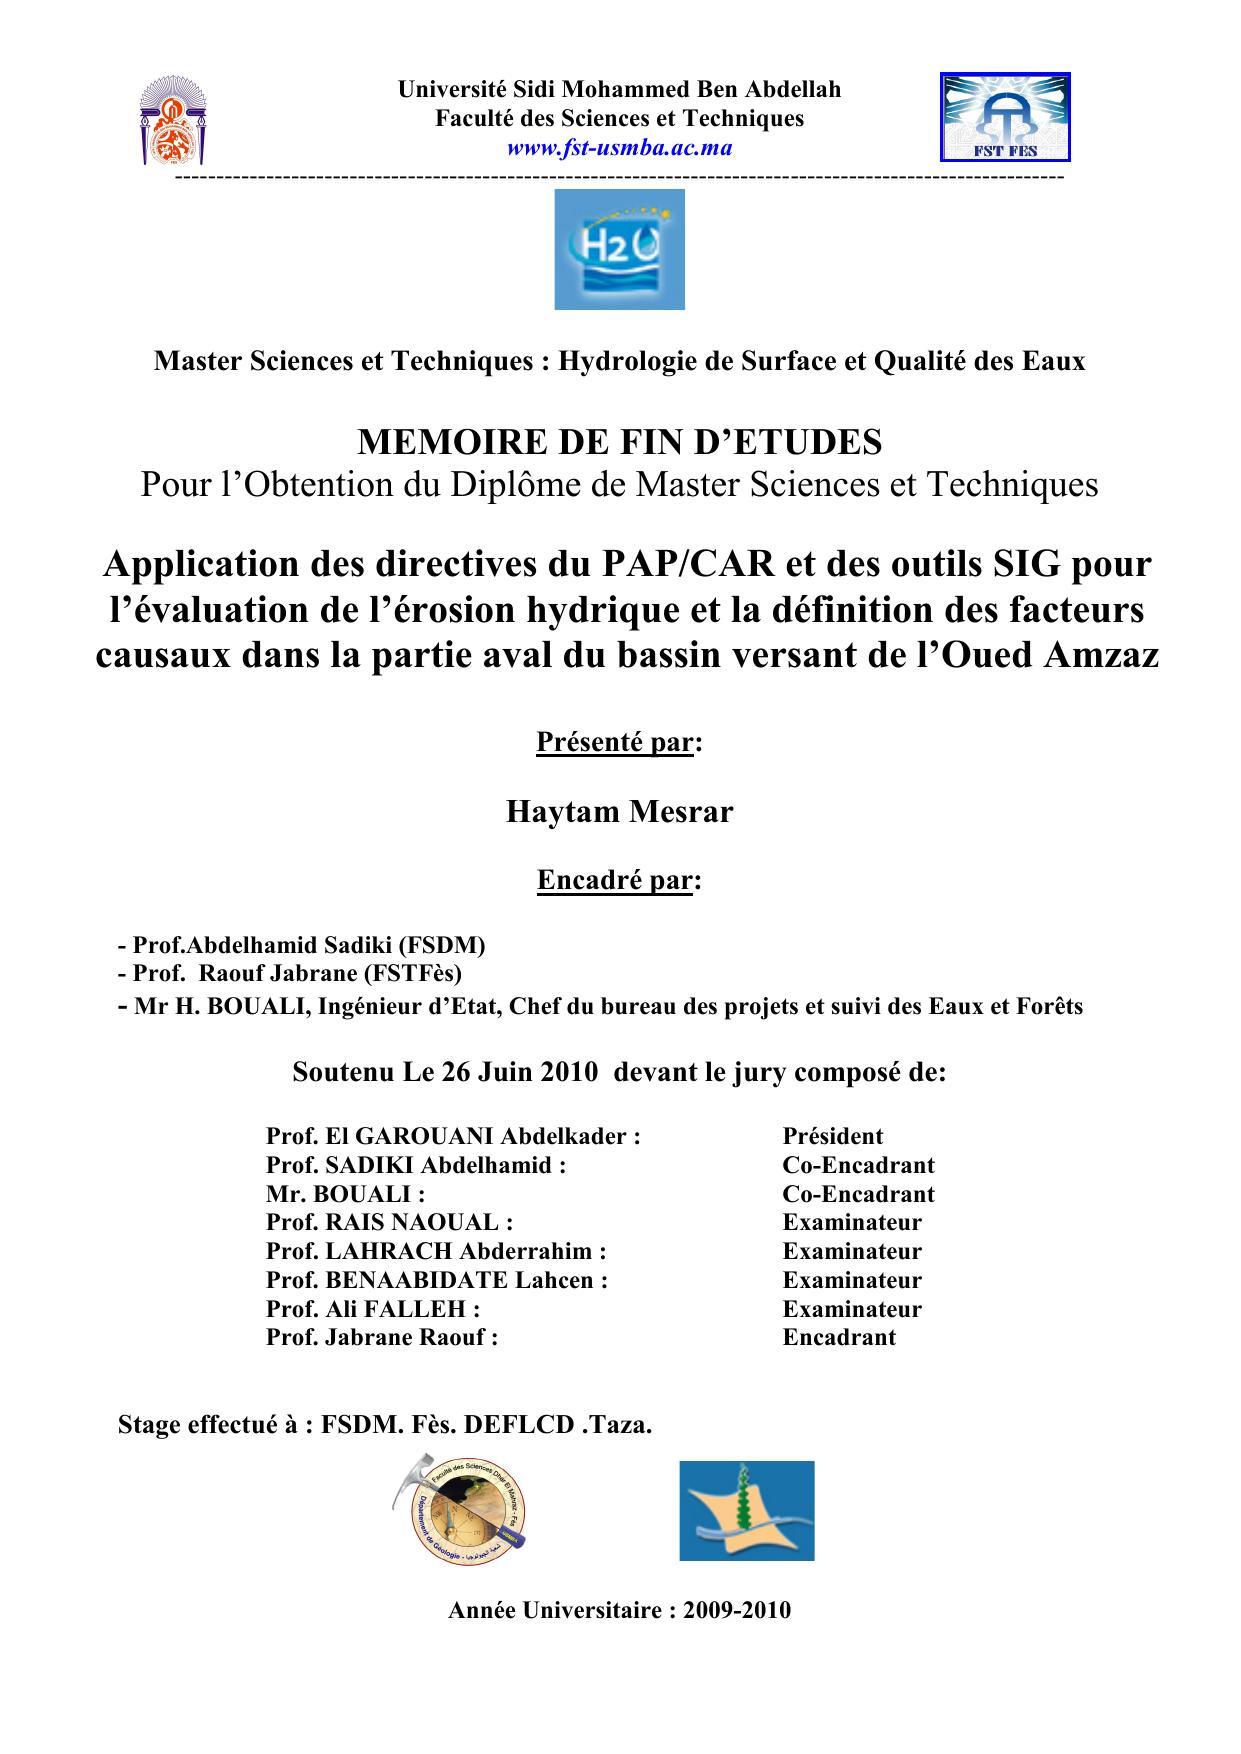 Application des directives du PAP/CAR et des outils SIG pour l’évaluation de l’érosion hydrique et la définition des facteurs causaux dans la partie aval du bassin versant de l’Oued Amzaz